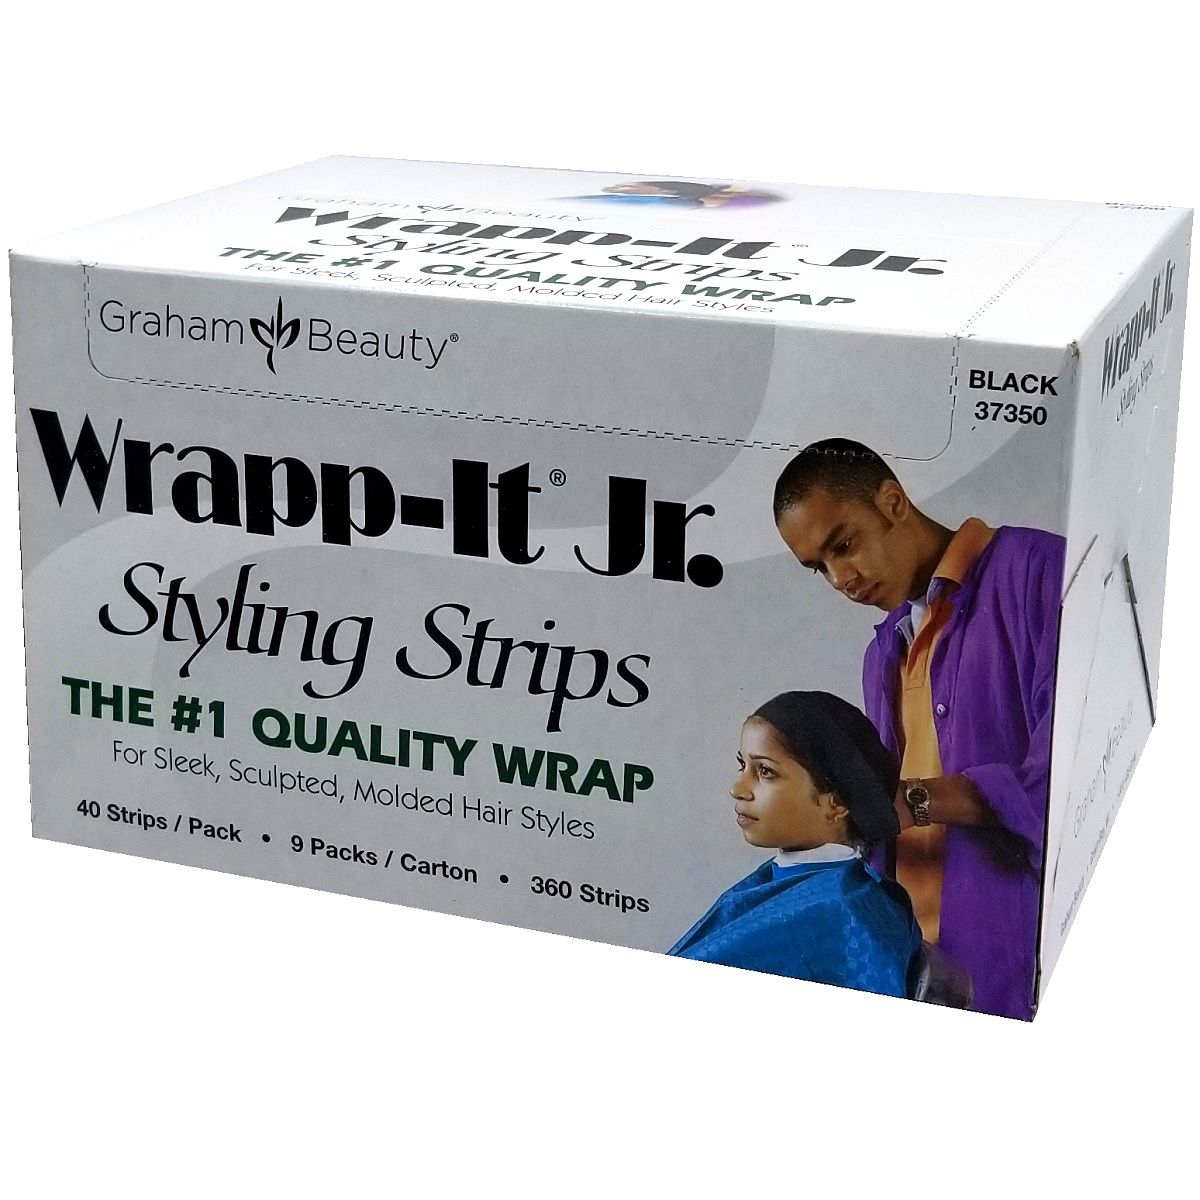 Wrapp-It Jr Styling Strips